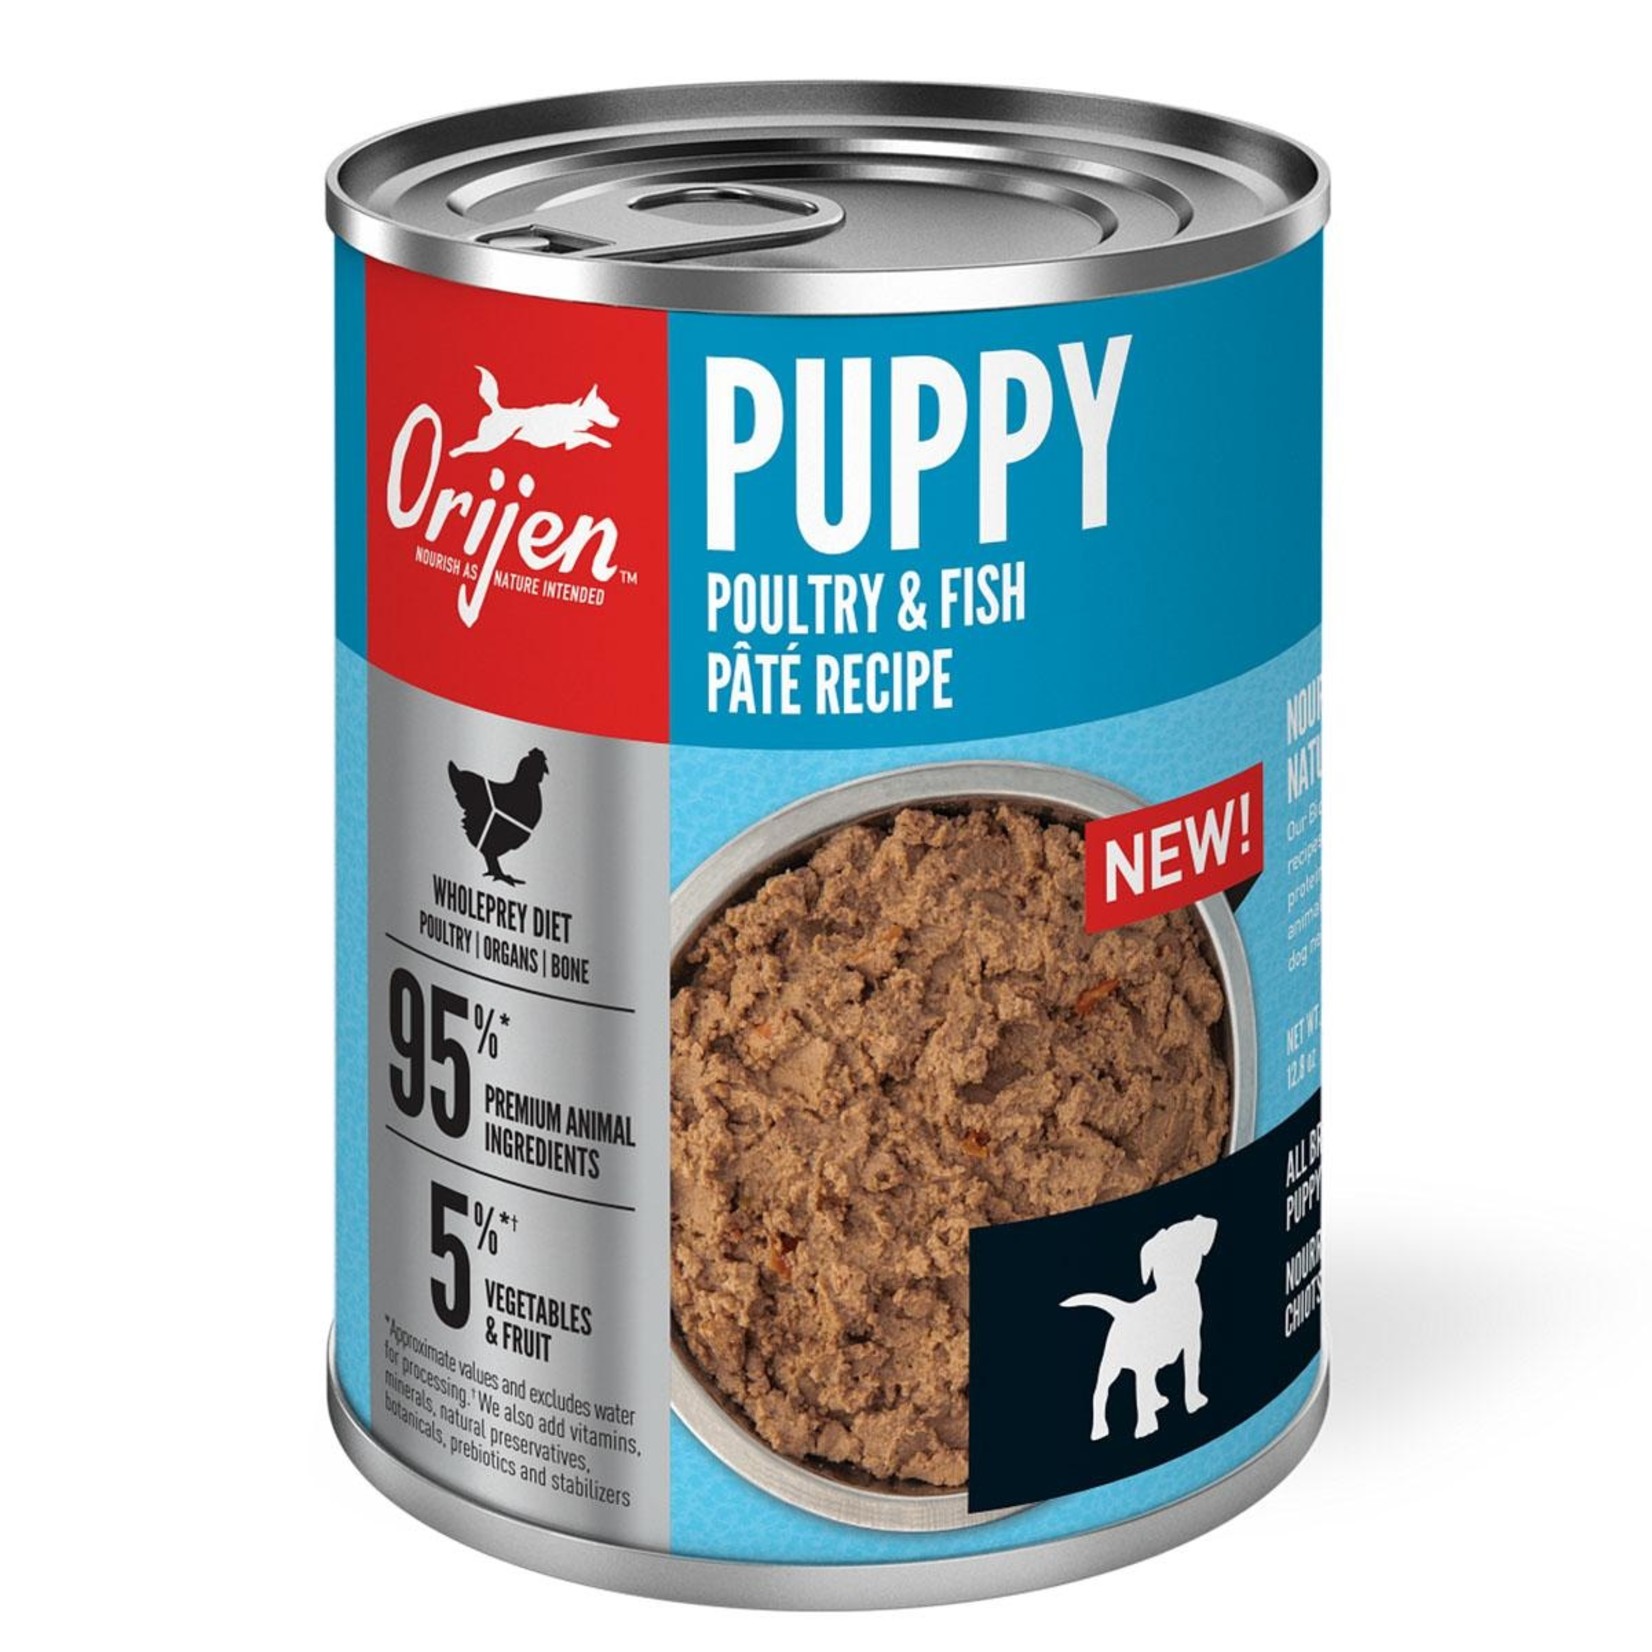 Orijen ORIJEN Puppy Poultry & Fish Paté Canned Dog Food 12.8oz